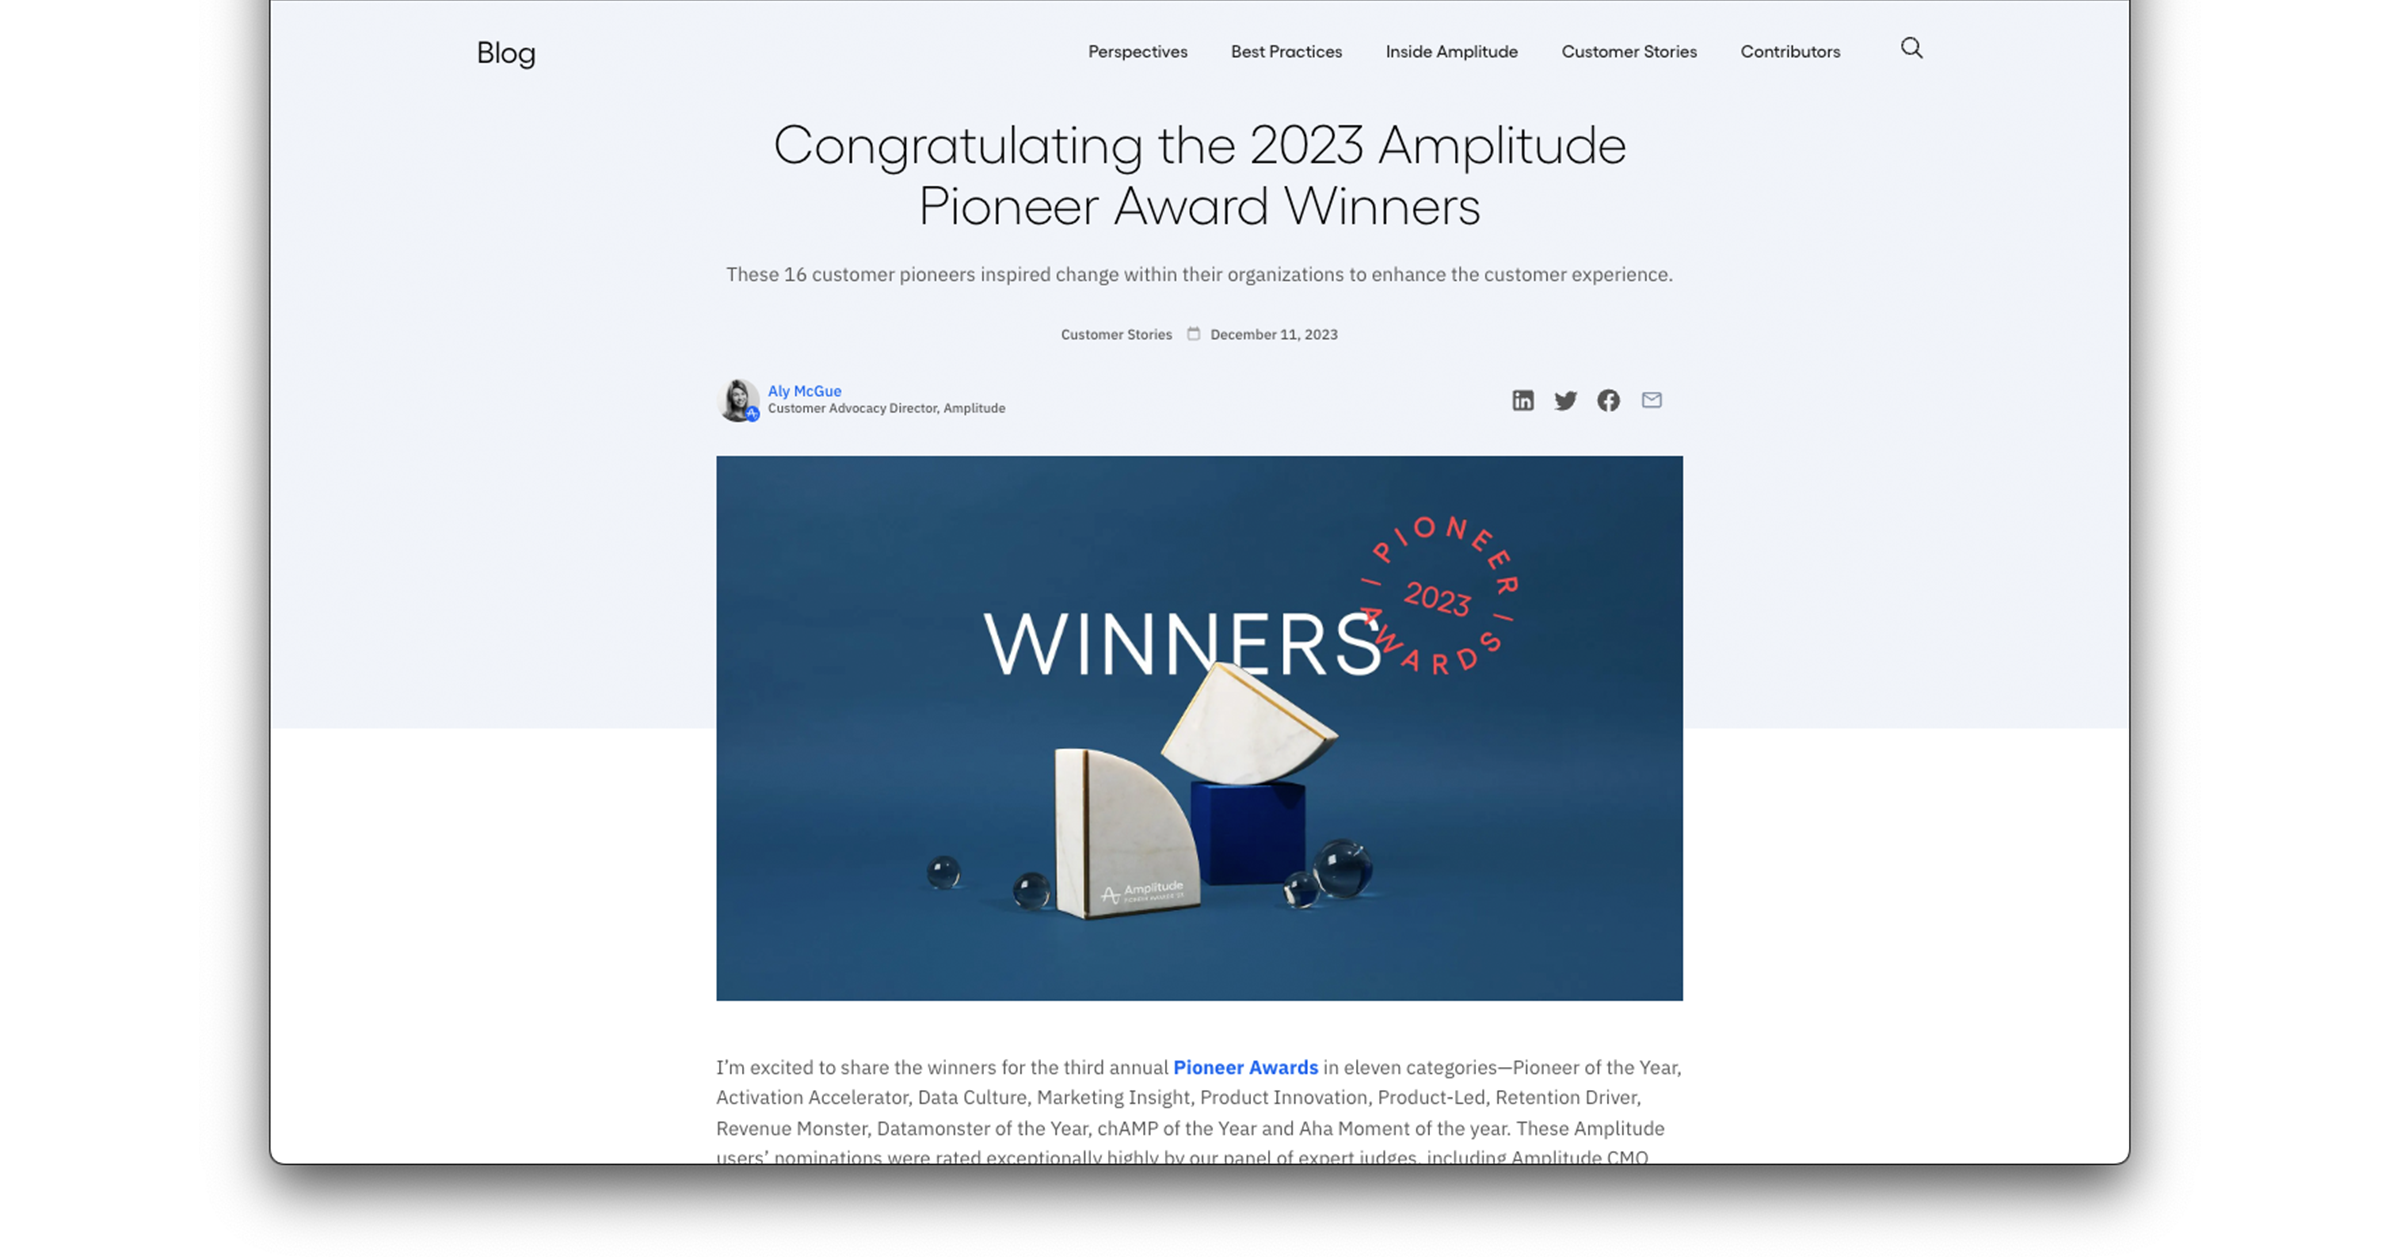 米国Amplitude社が、2023年度のAmplitude Pioneer Award 受賞者を発表